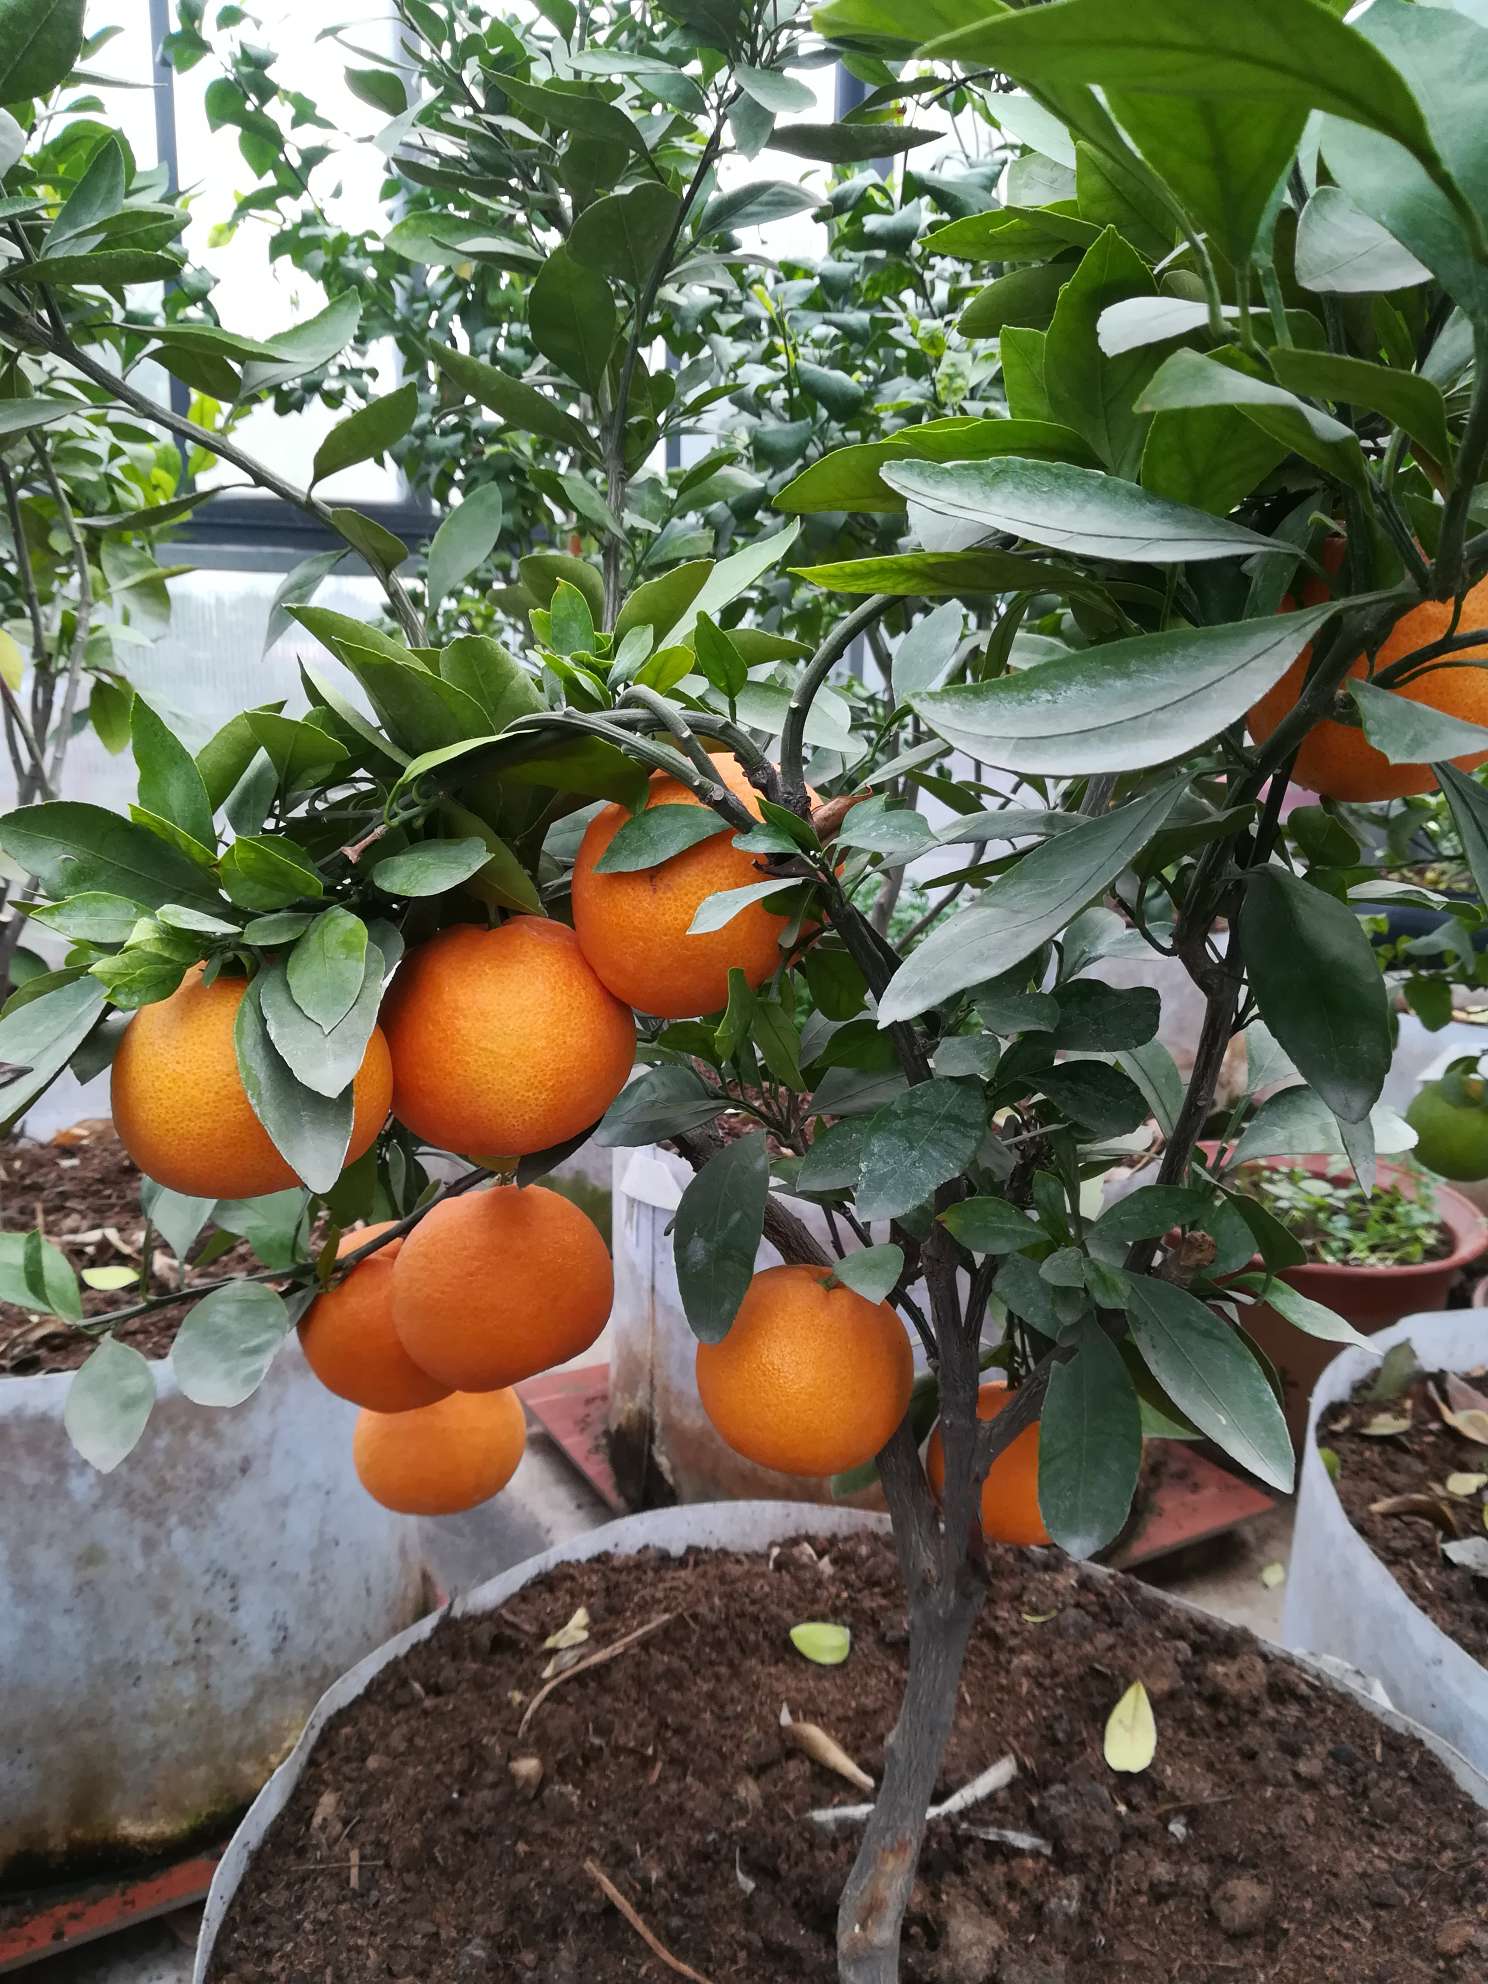 柑橘长啥样图片